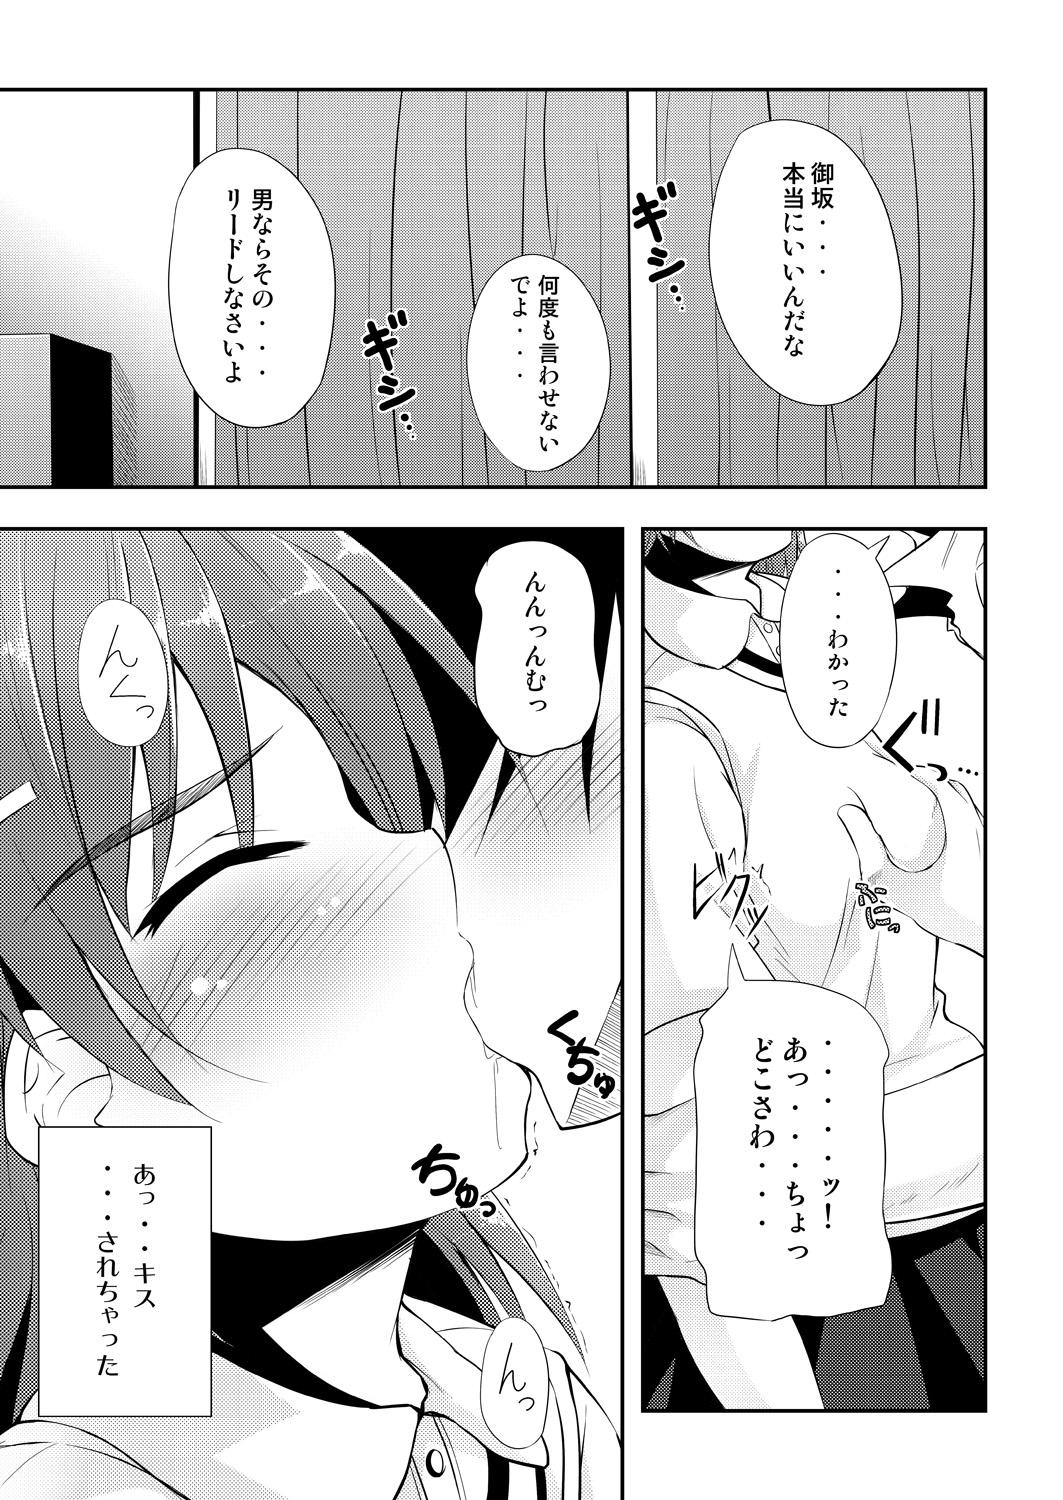 Foursome BIRIBIRI Study - Toaru kagaku no railgun Ebony - Page 4